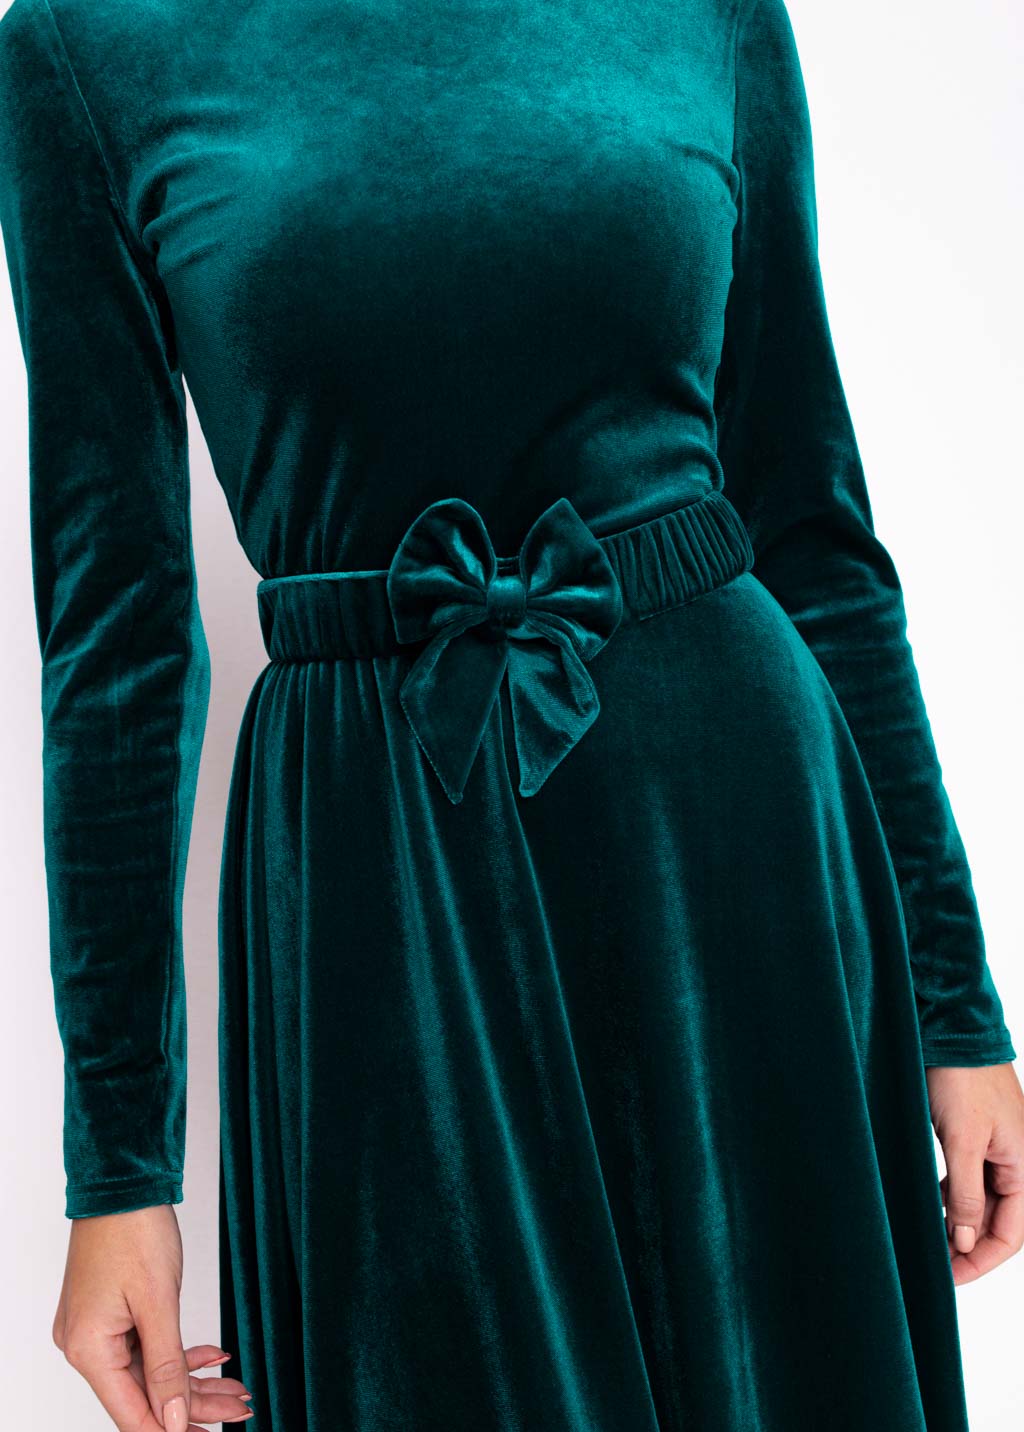 Teal green velvet long dress with belt